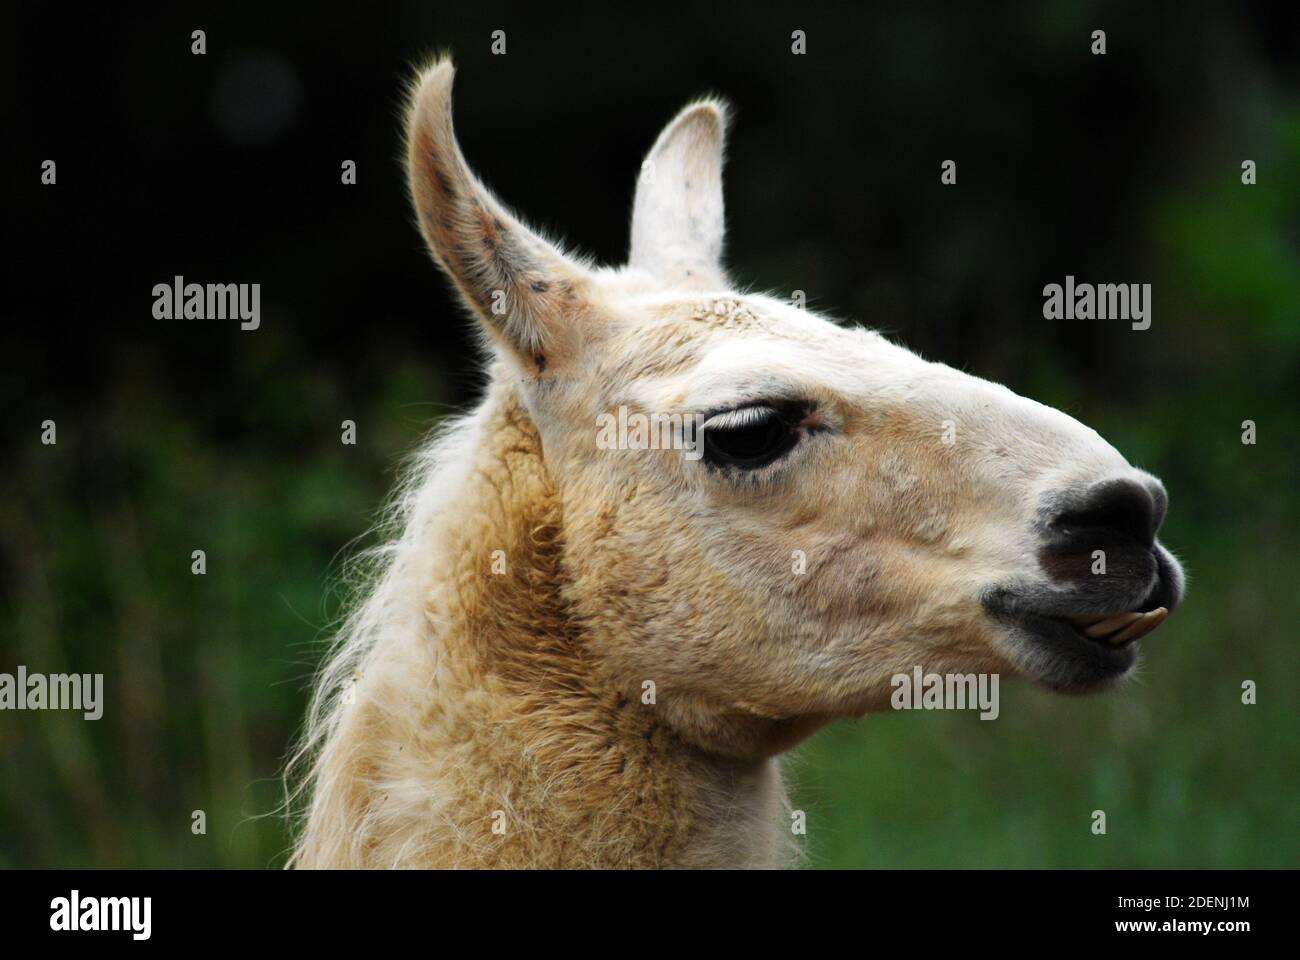 Lama (lama glama) è un camelide sudamericano addomesticato, ampiamente allevato per la lana, la carne, e utilizzato come animale da imballaggio da culture andine sudamericane. Foto Stock